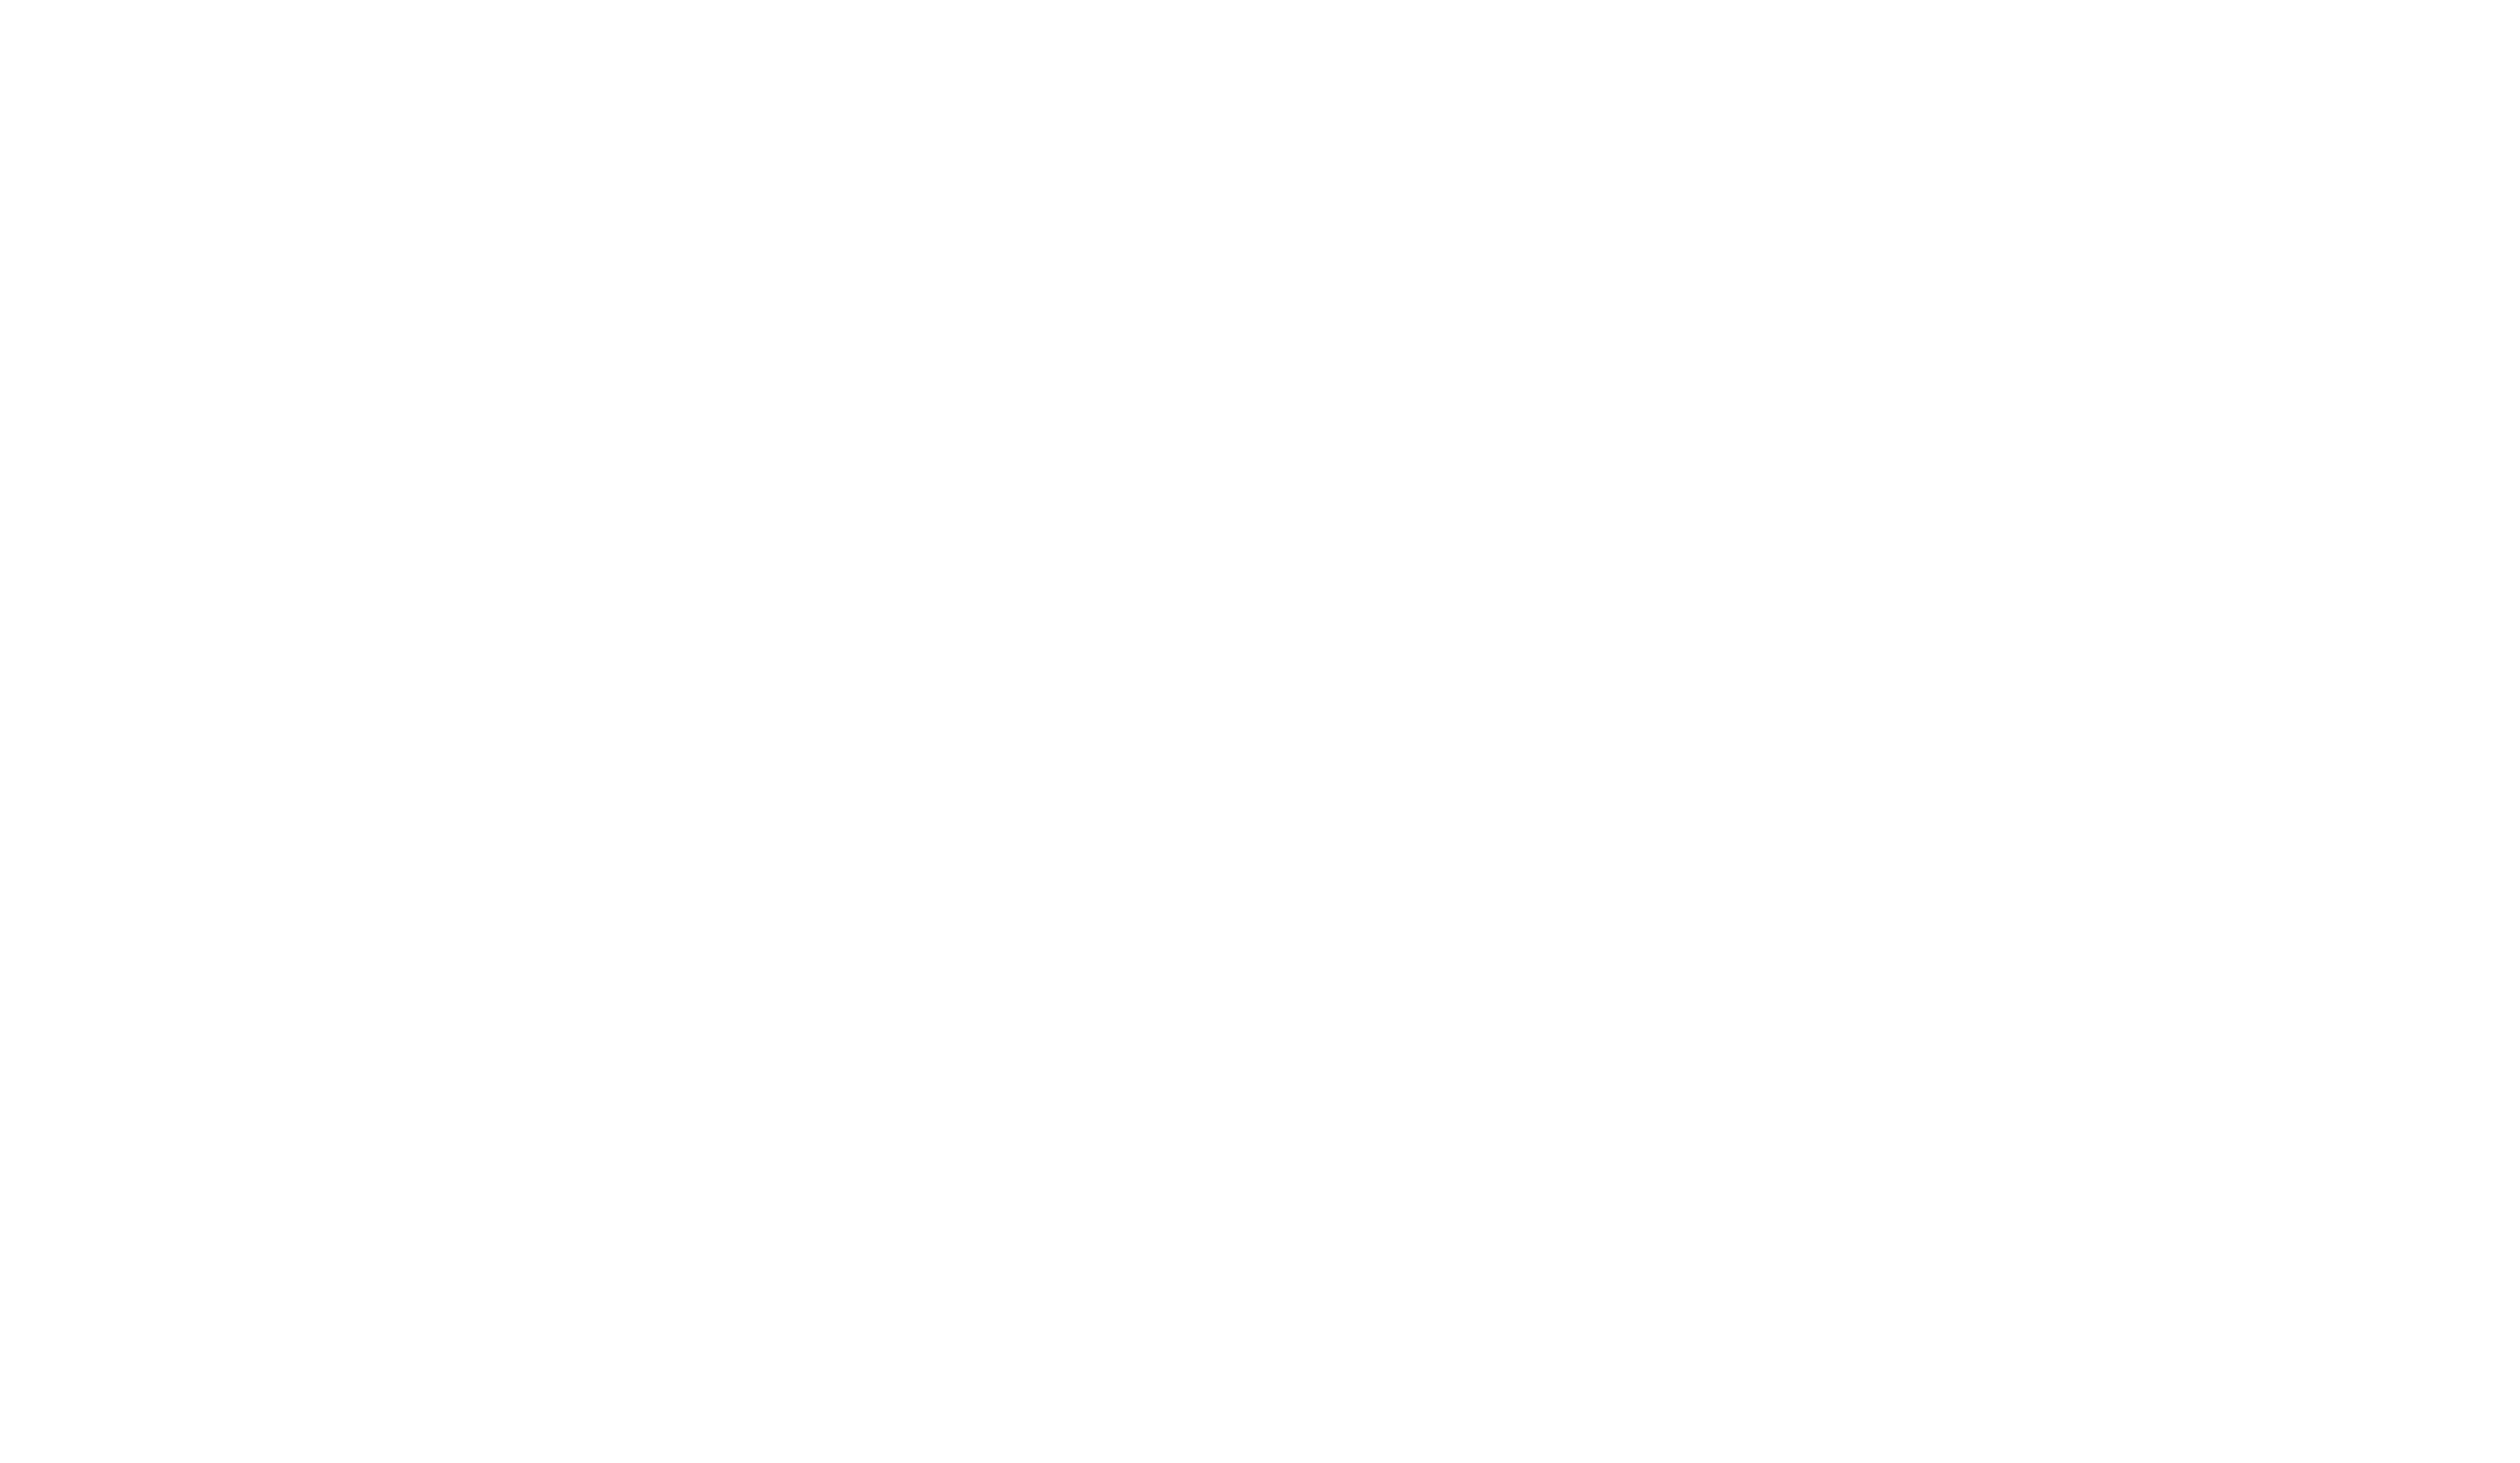 The level logo